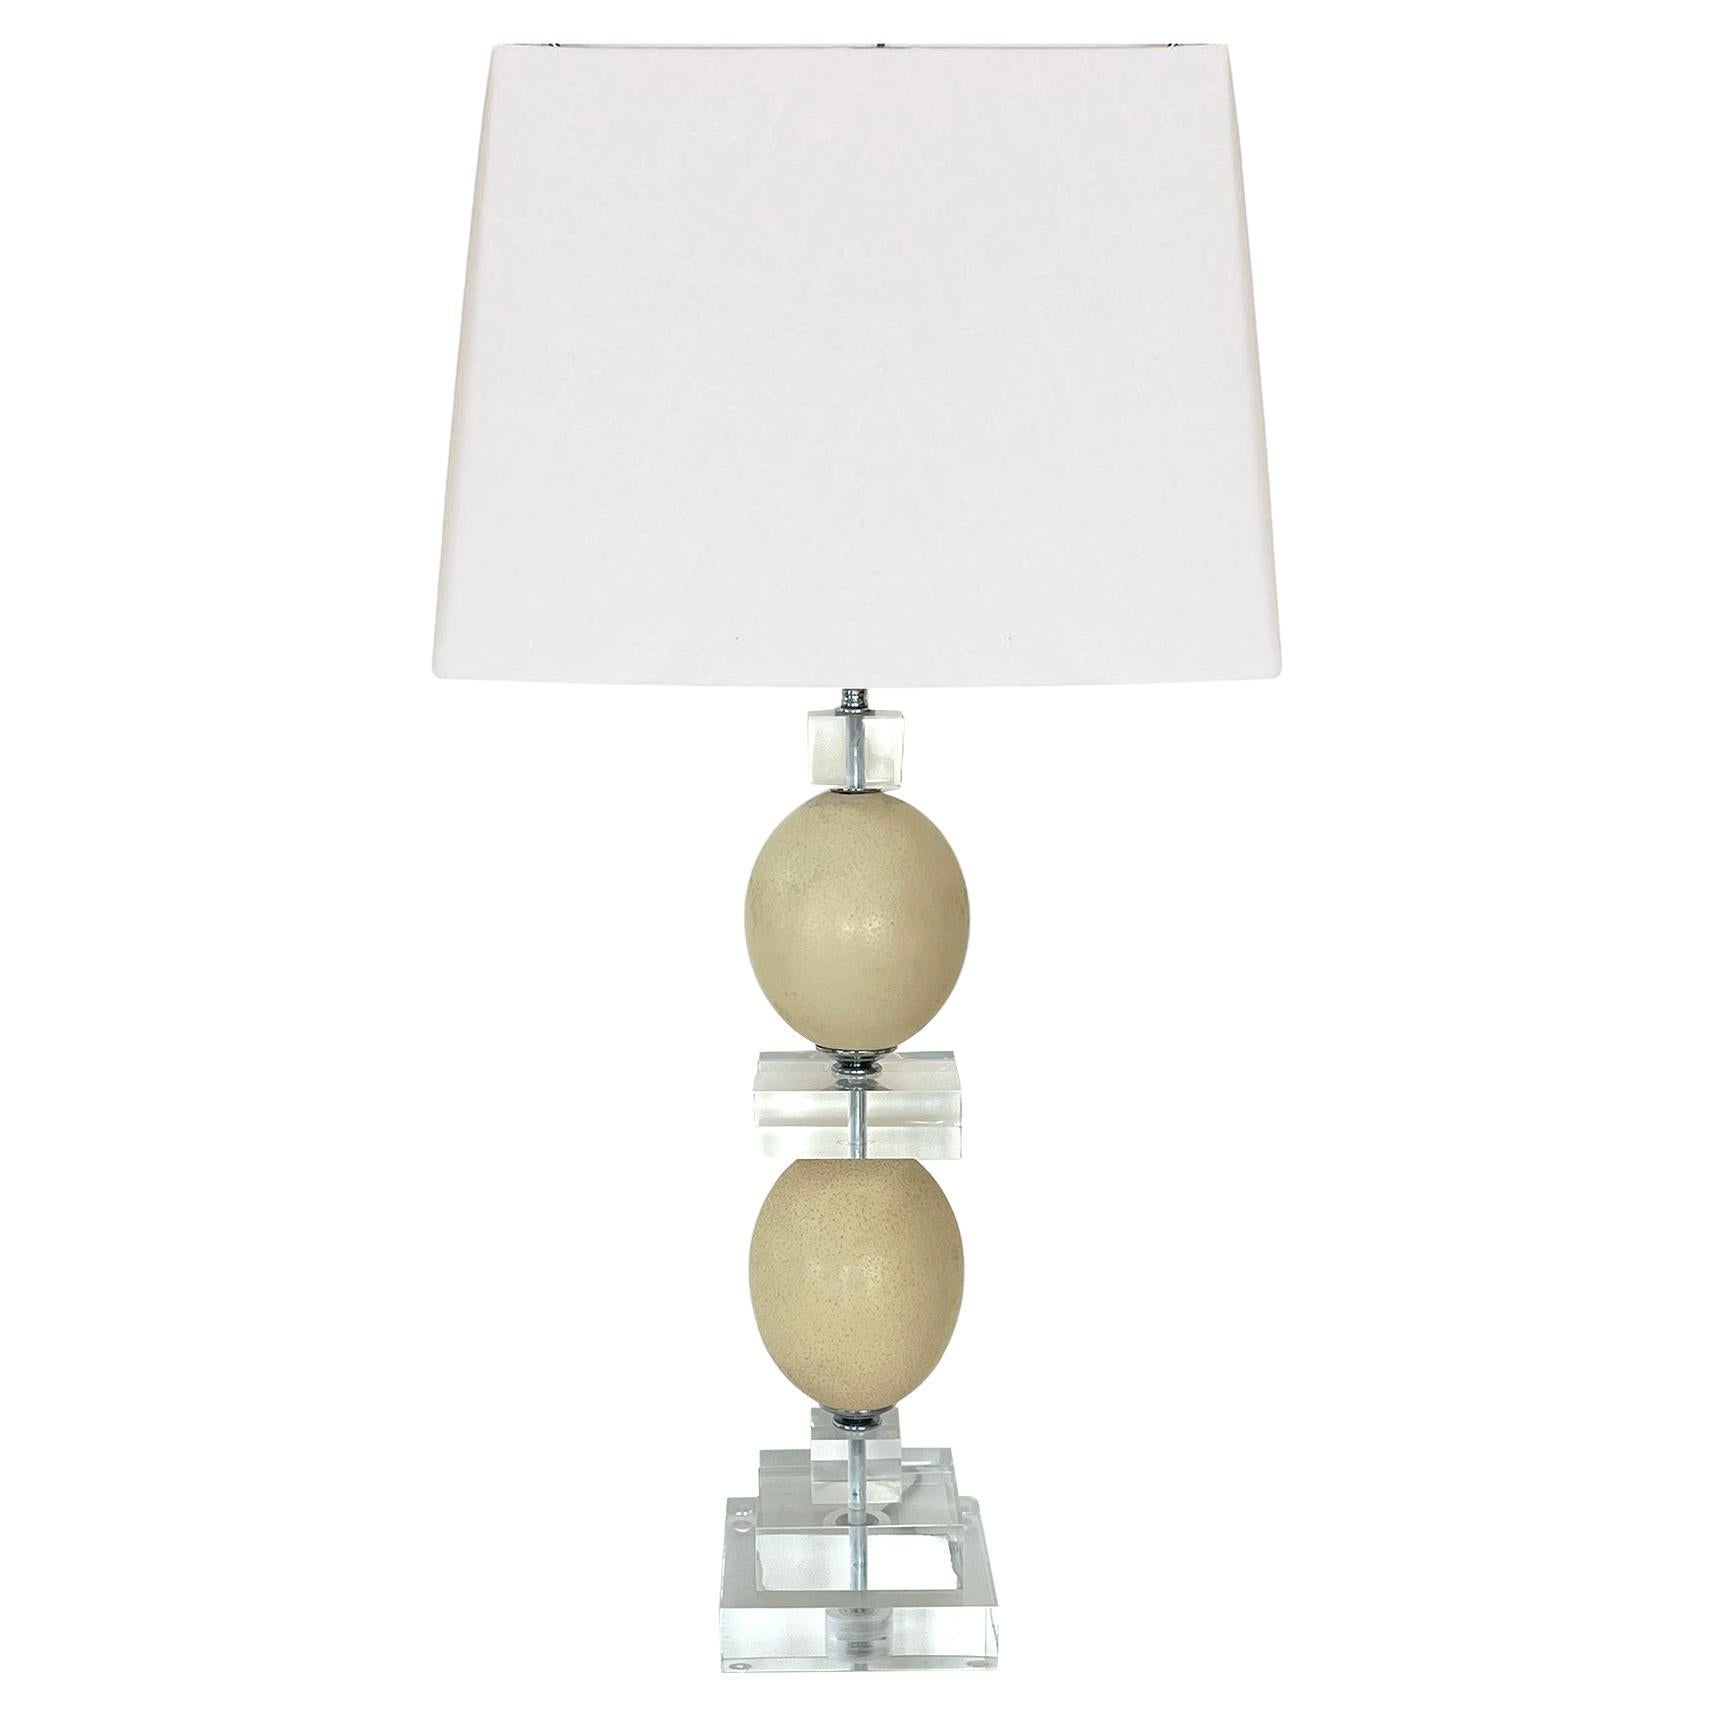 Une grande et saisissante lampe de table en lucite avec un œuf d'autruche